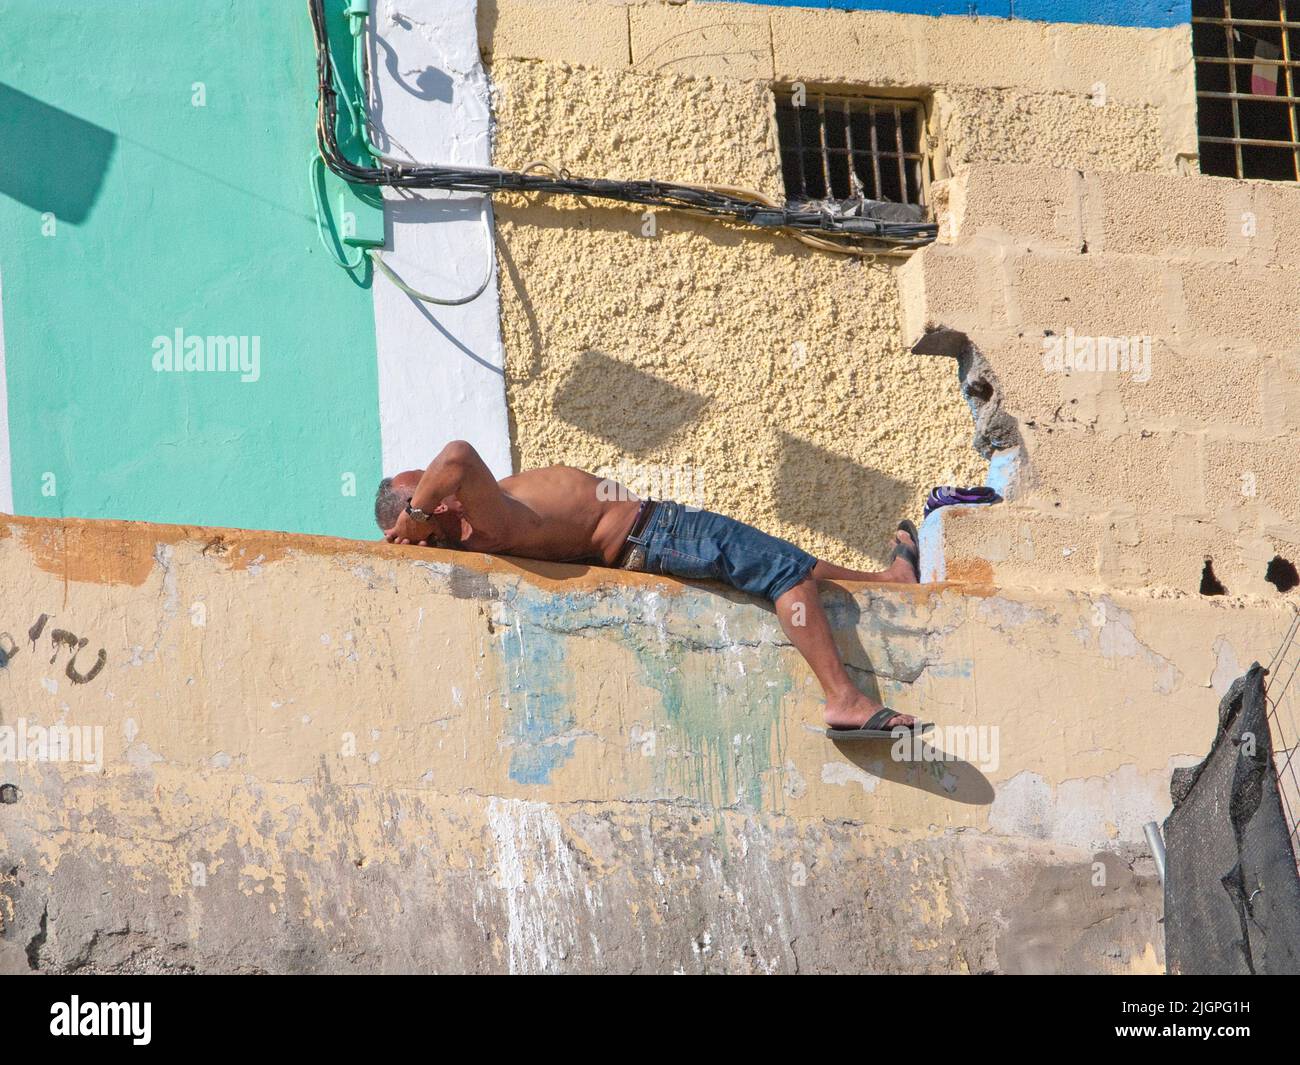 Uomo che dorme di fronte ad una casa, disrict San Nicolas, Las Palmas, Grand Canary, isole Canarie, Spagna, Europa Foto Stock